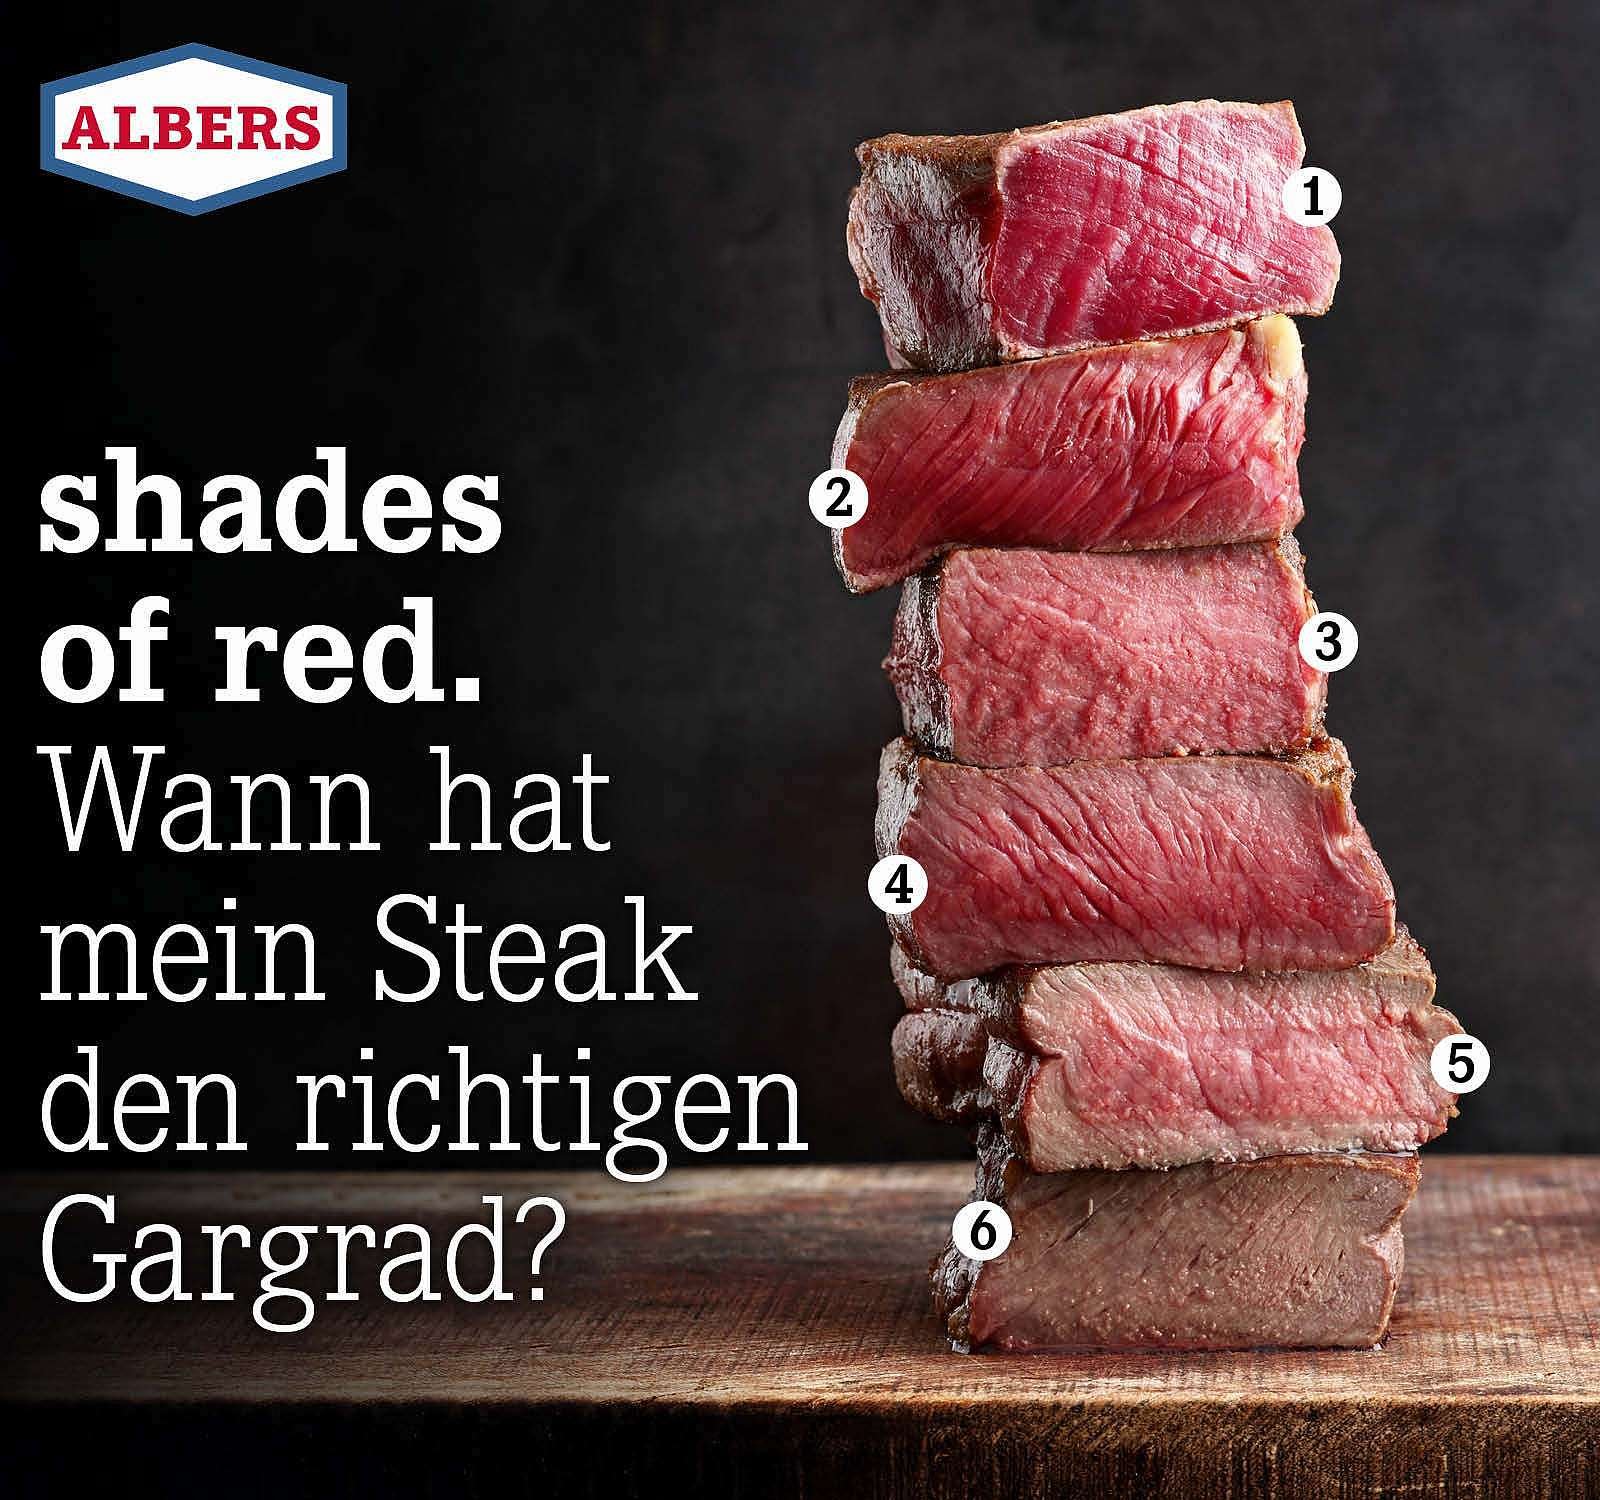 Albers Food Shop DE: Wann den Gargrad? Milled | mein richtigen hat Steak